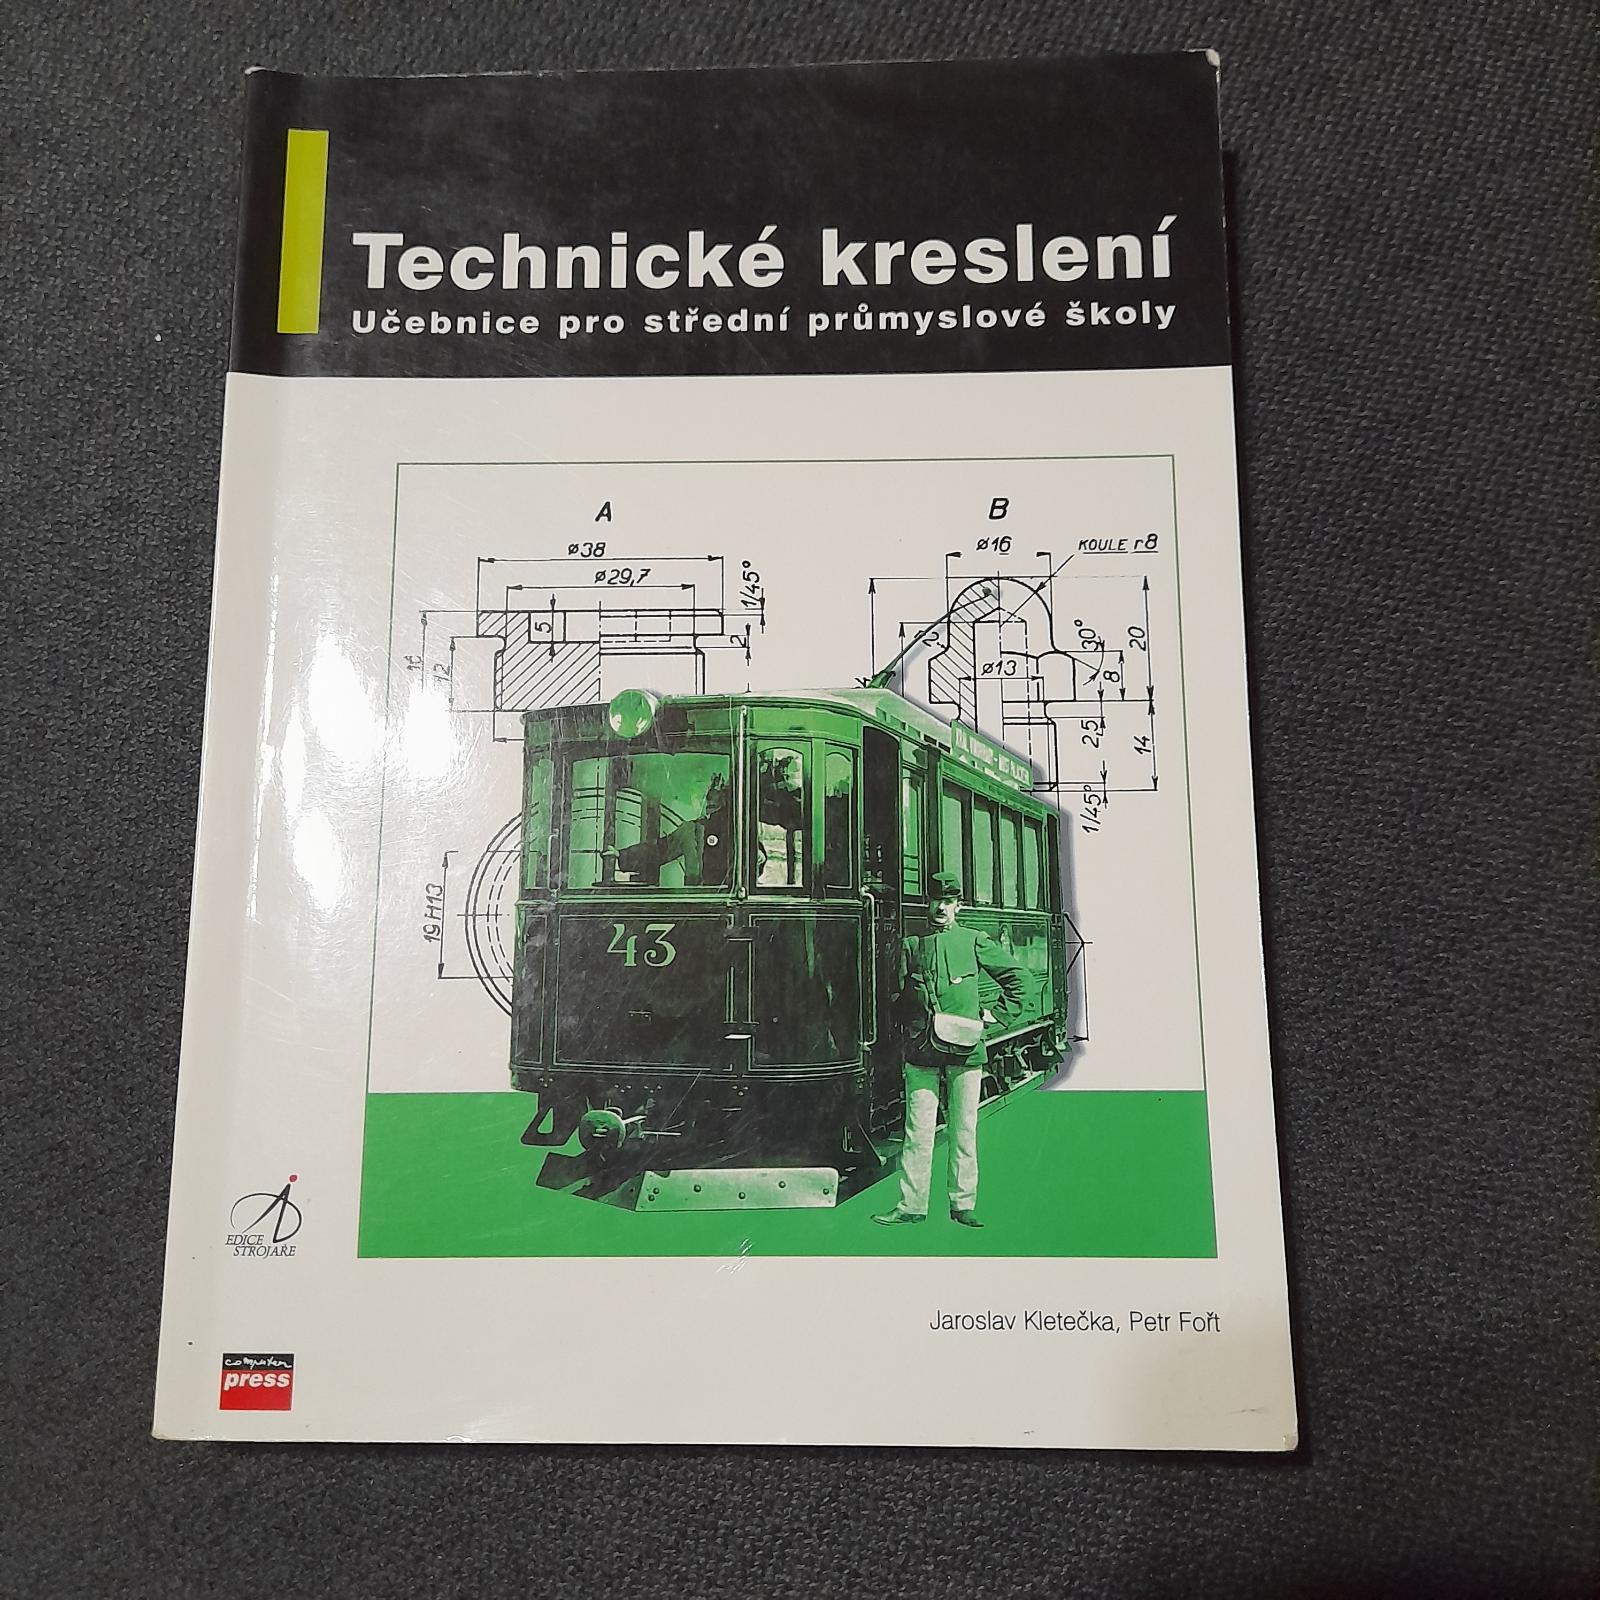 Učebnica Technické kreslenie pre stredné priemyselné školy. - Knihy a časopisy